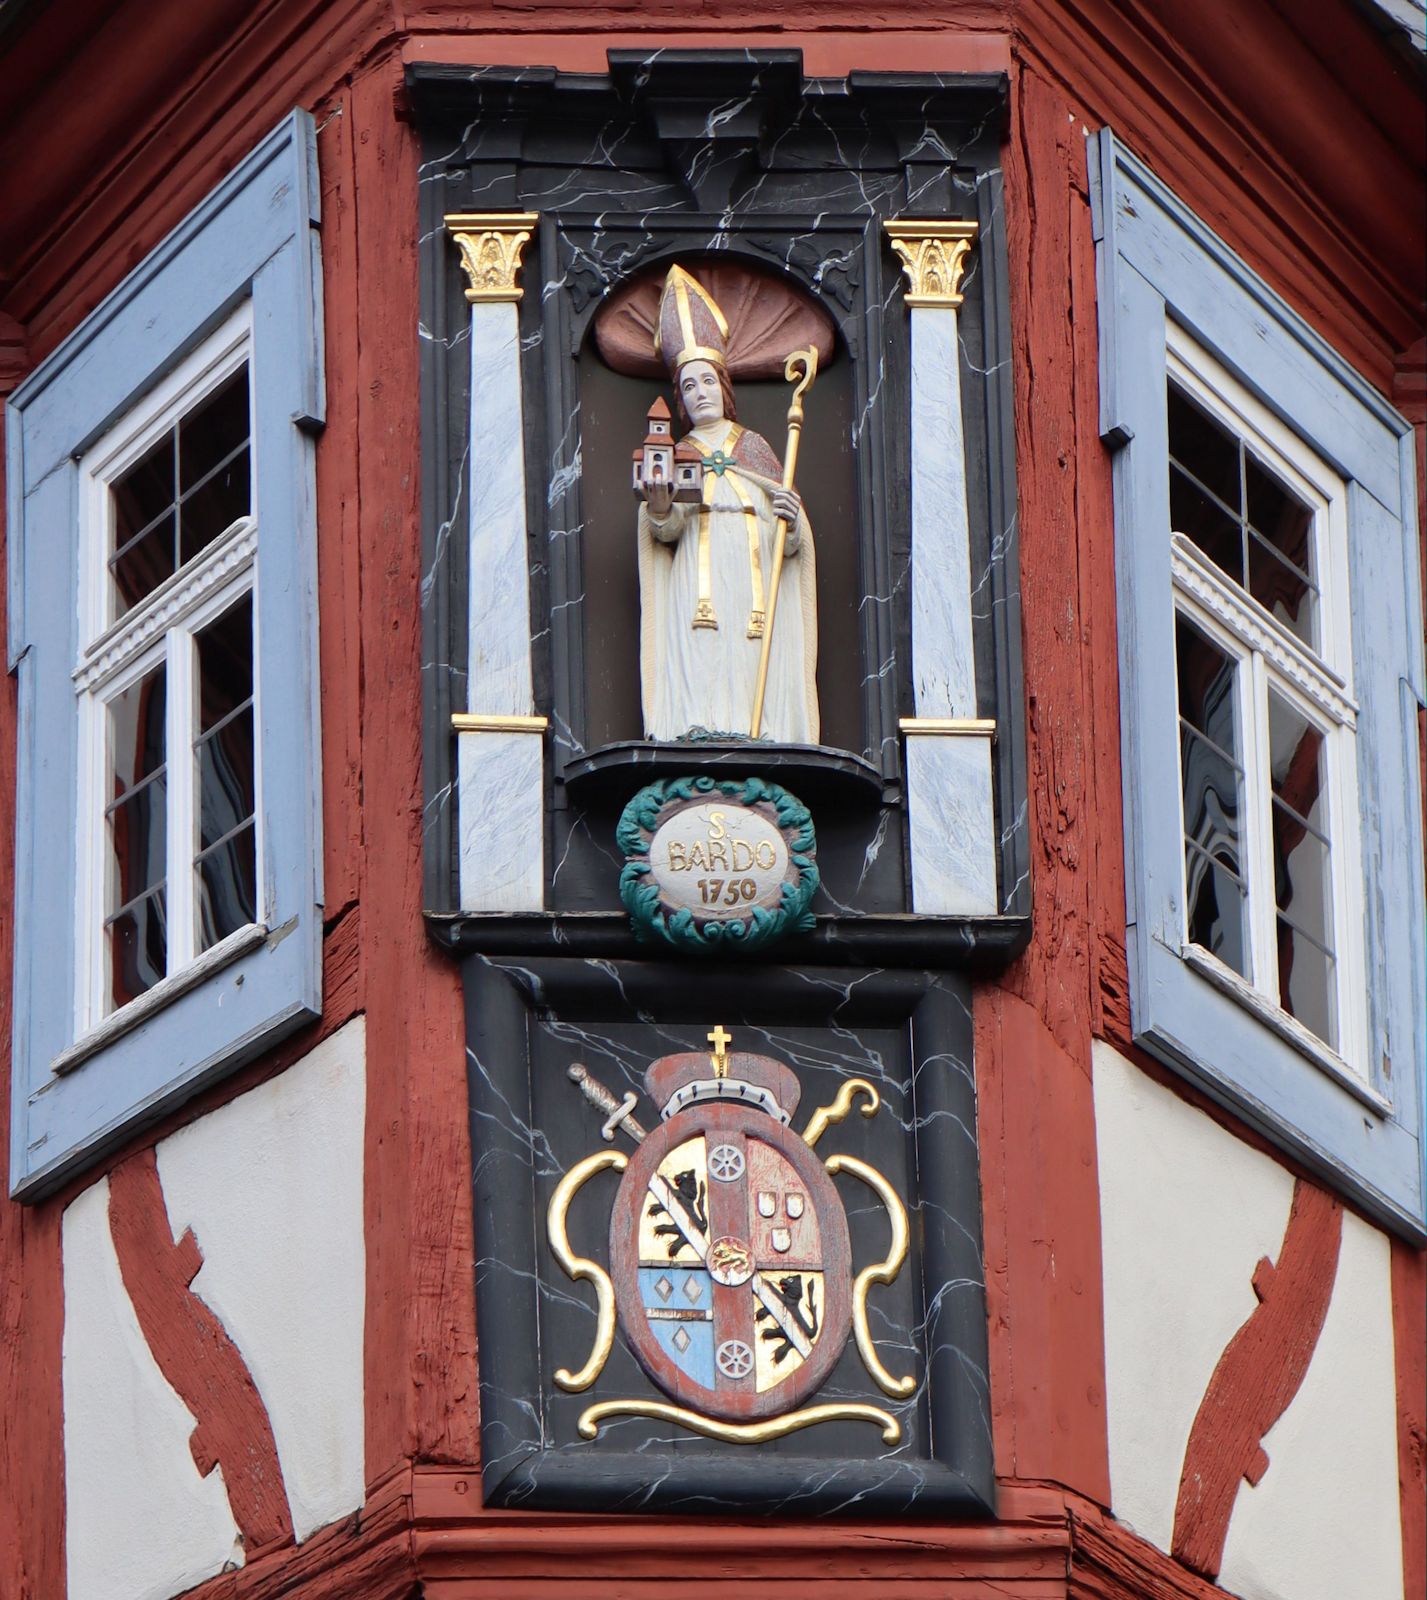 Statue am Rathaus in Bardos Geburtsort Oppershofen